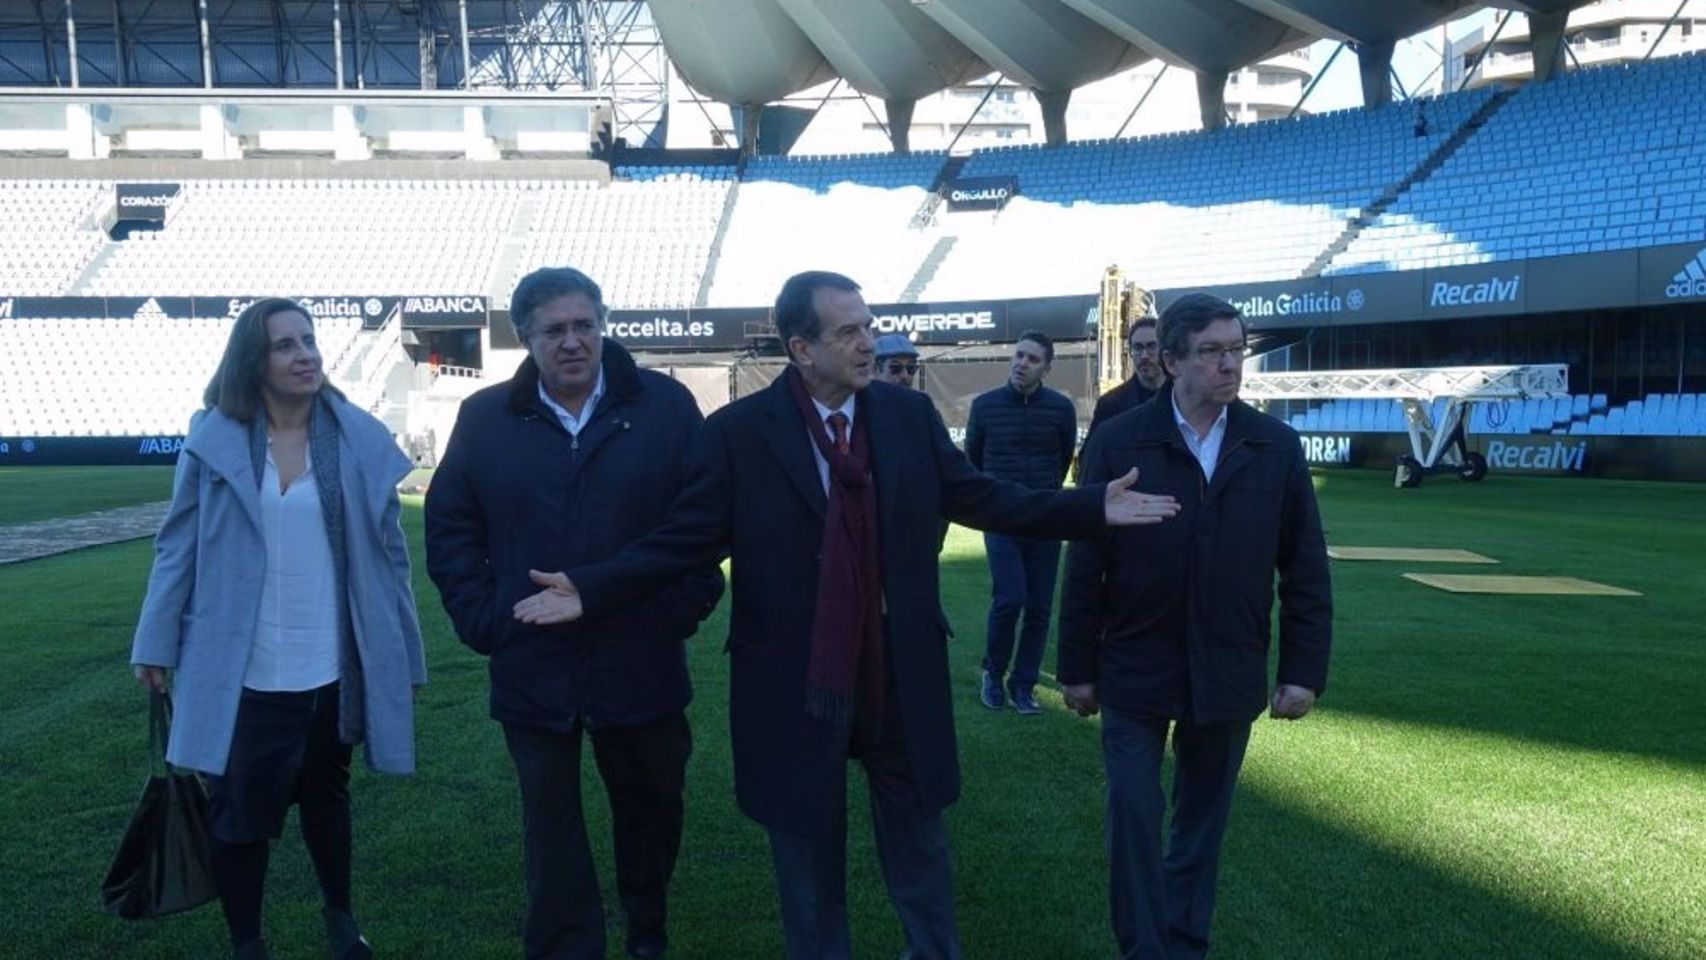 El alcalde de Vigo, Abel Caballero, con varios concejales, en el césped del estadio municipal Abanca Balaídos.